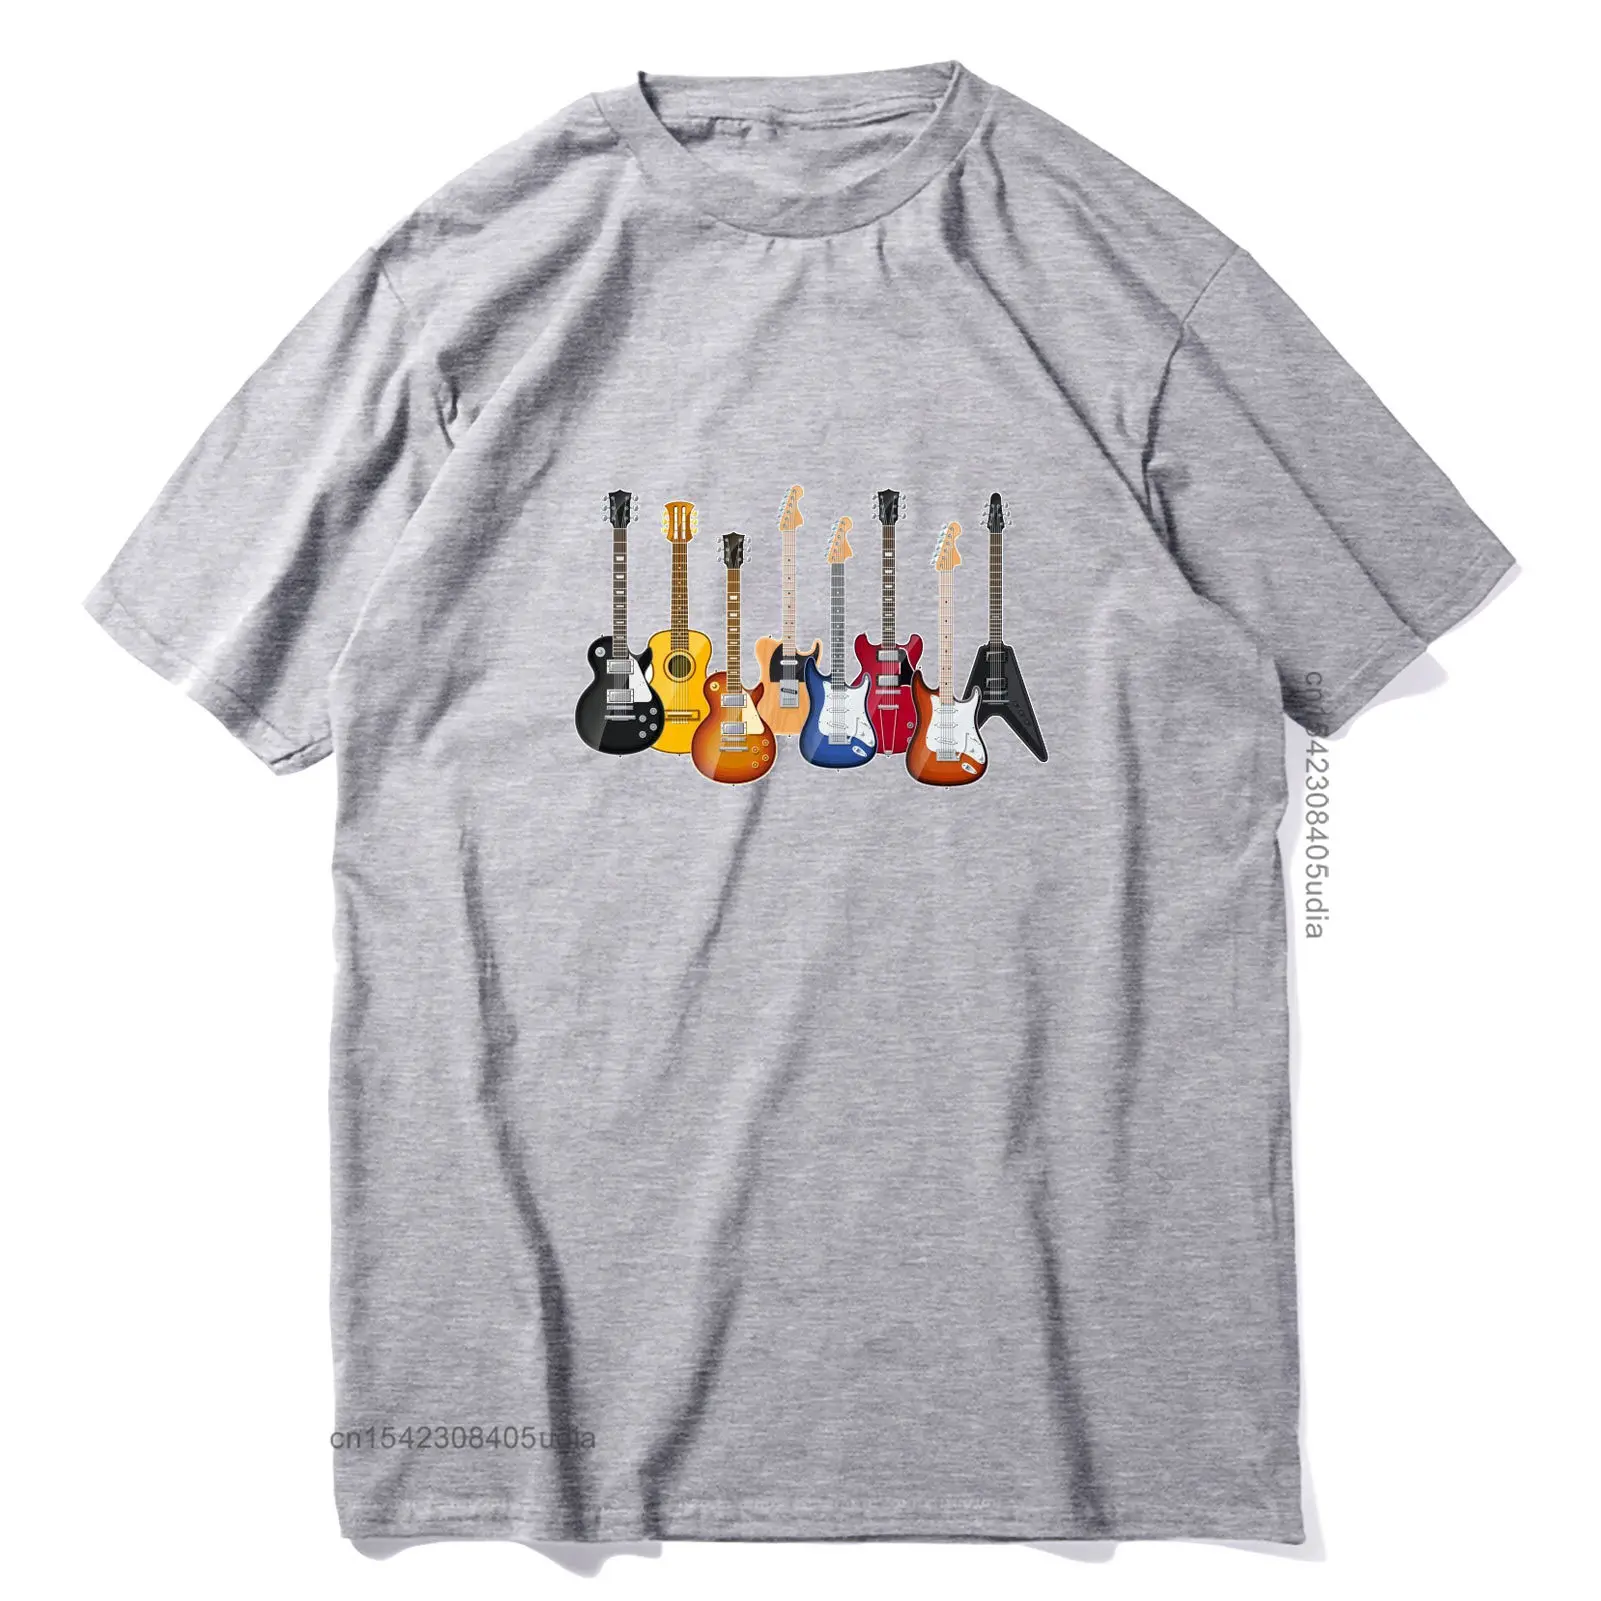 New T Shirt For Men Cool Guitars Printing Harajuku Tee Birthday Top T-Shirts Tops Tees For Men Faddish Camisa T Shirts